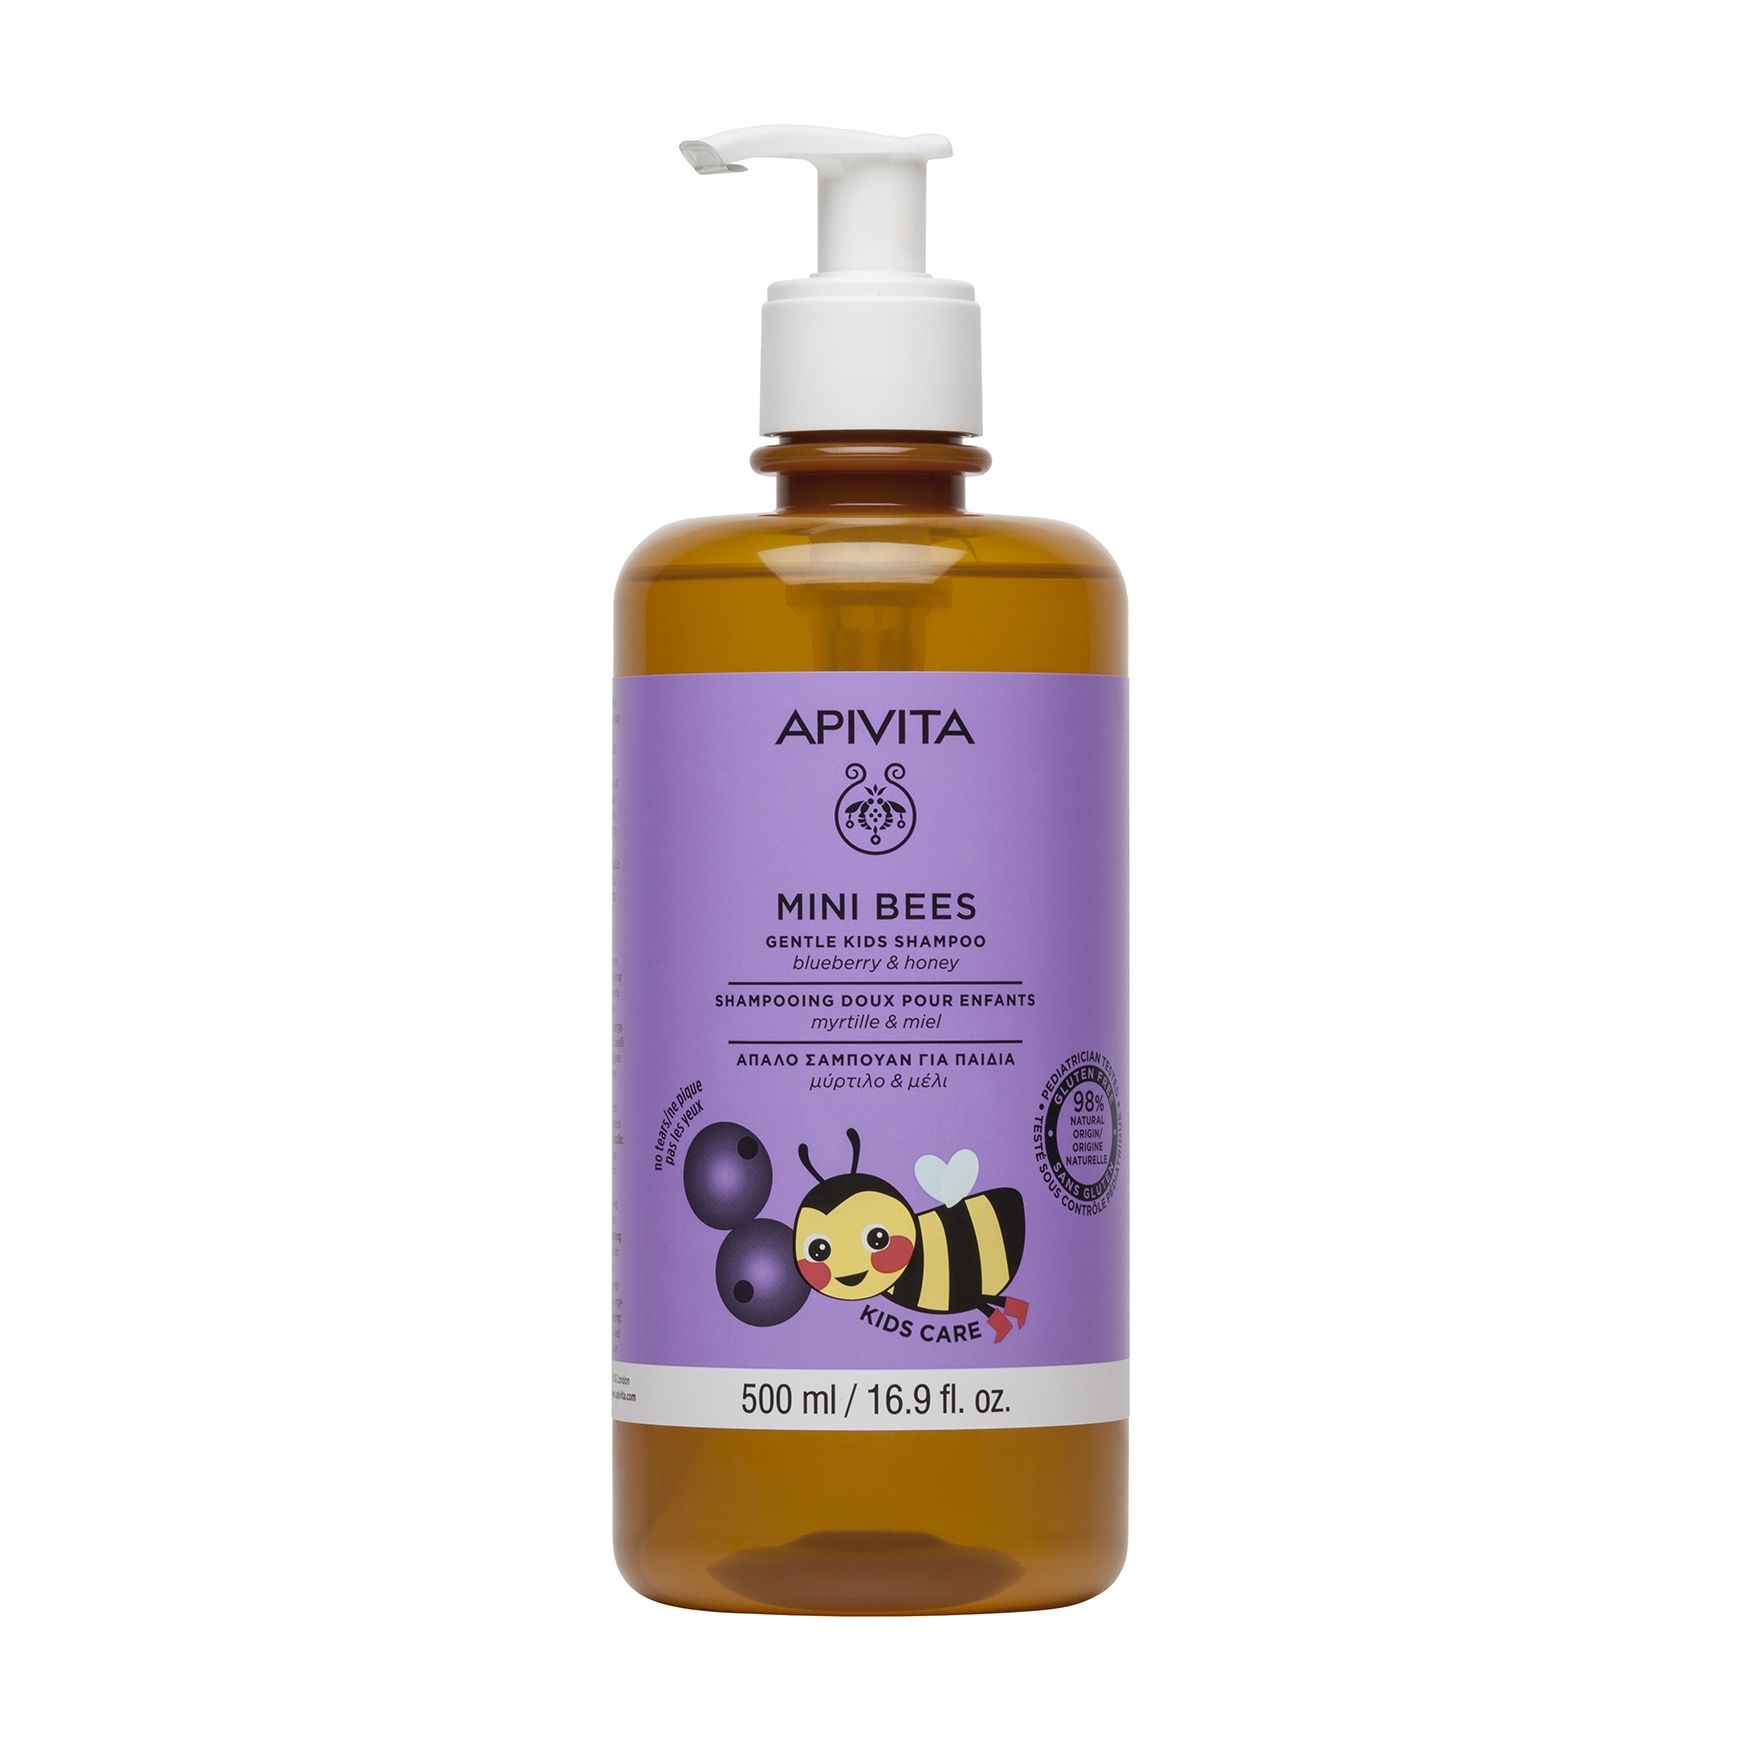 Нежный шампунь для волос Apivita Mini Bees Gentle Kids Shampoo с черникой и медом apivita питательный и восстанавливающий шампунь с оливой и медом 250 мл